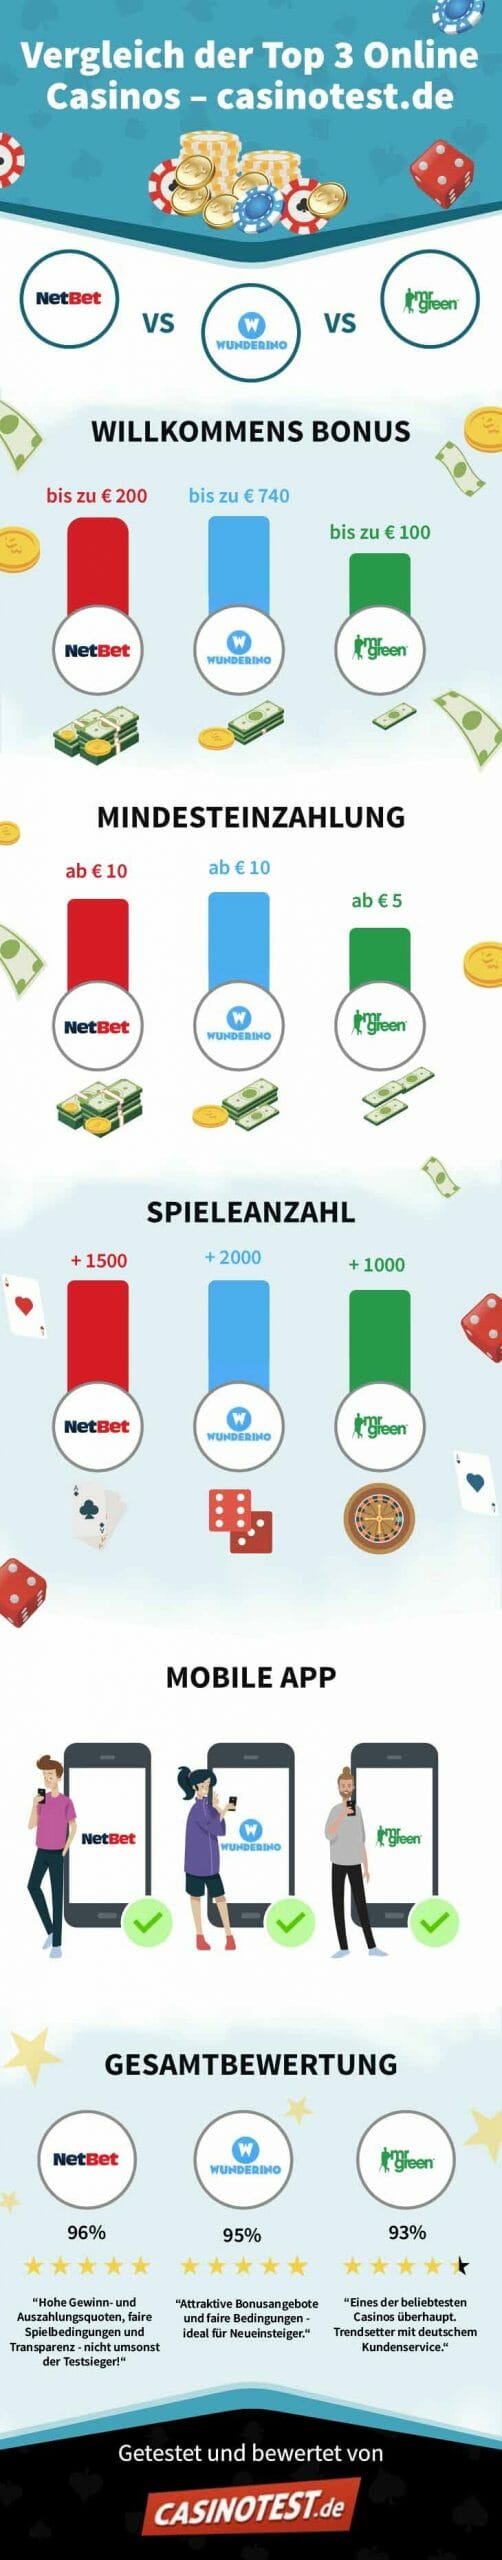 Macht mich online casino austria reich?